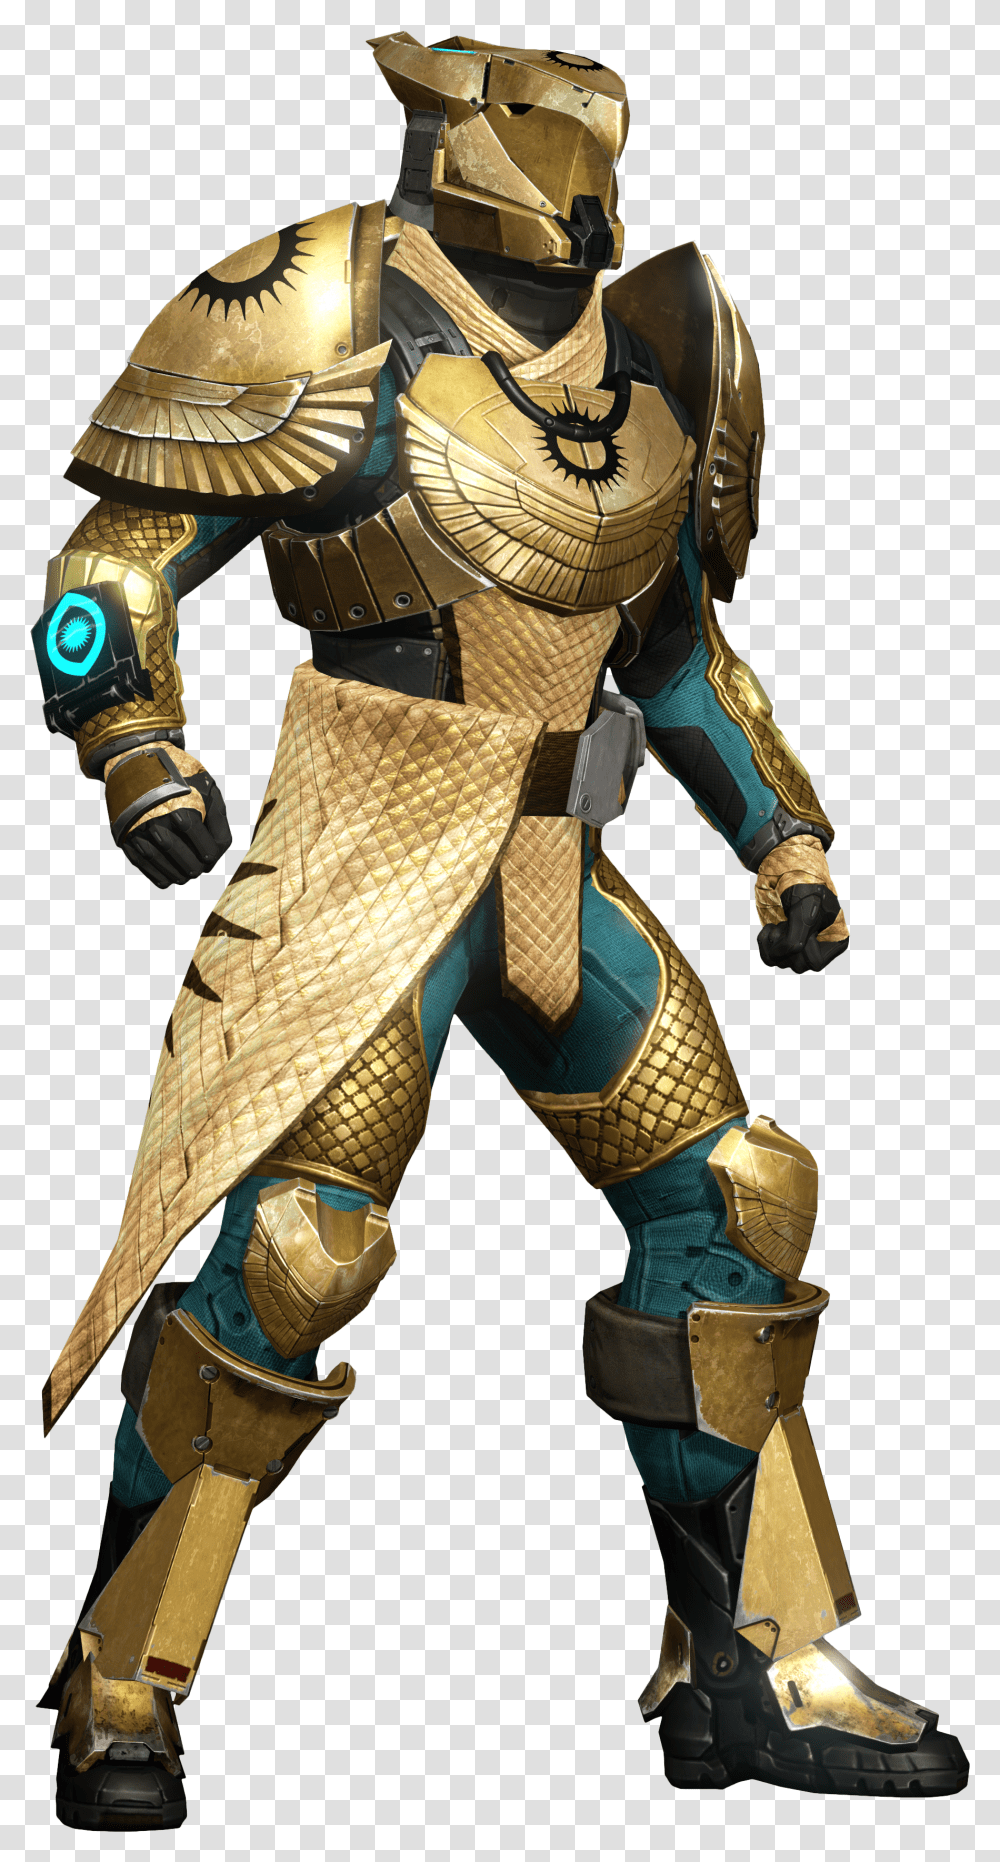 Destiny 1 Trials Of Osiris Titan Armor Destiny 1 Trials Armor Transparent Png